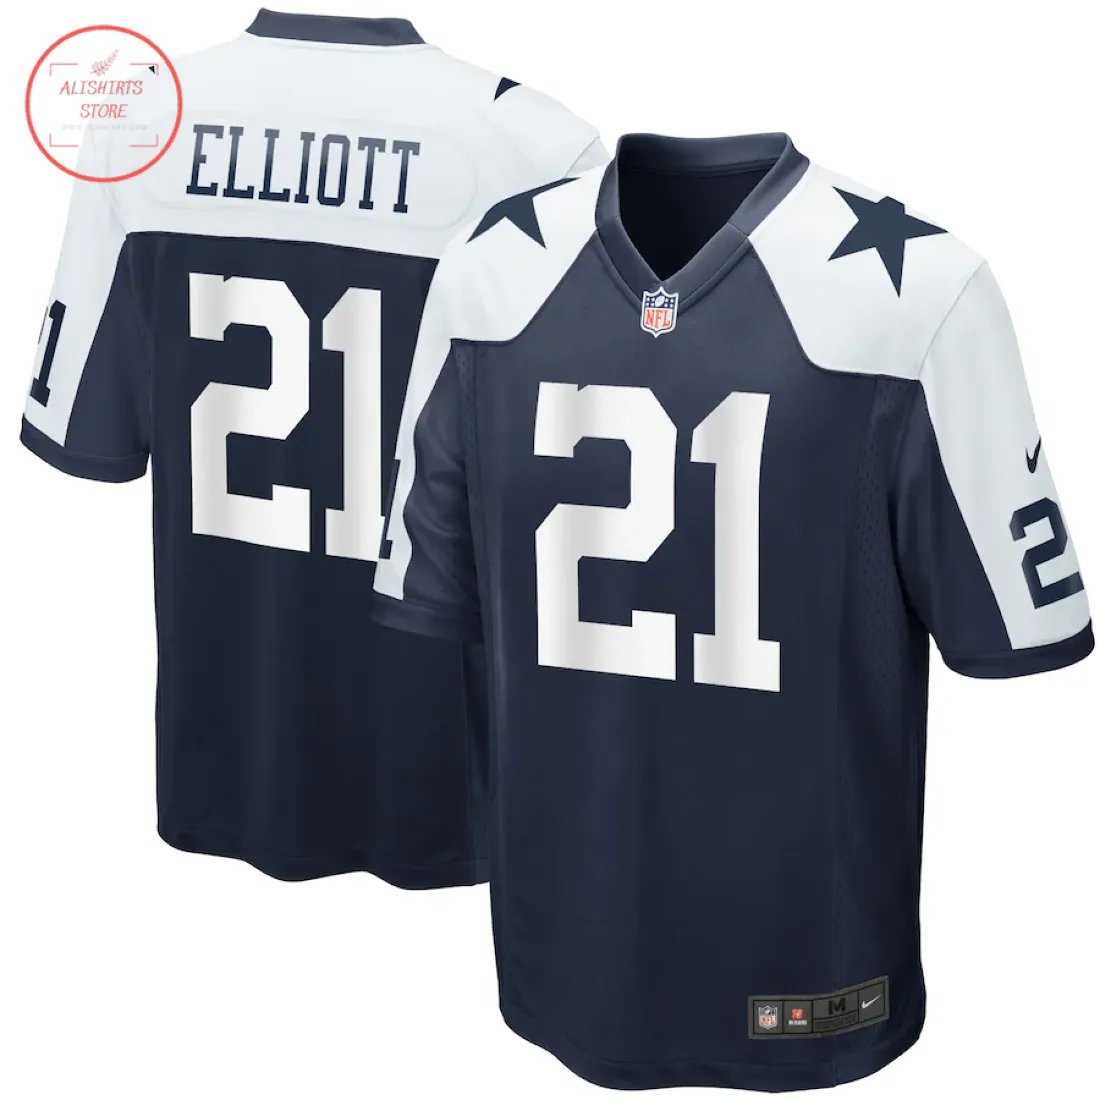 NFL Dallas Cowboys Ezekiel Elliott Football Jersey